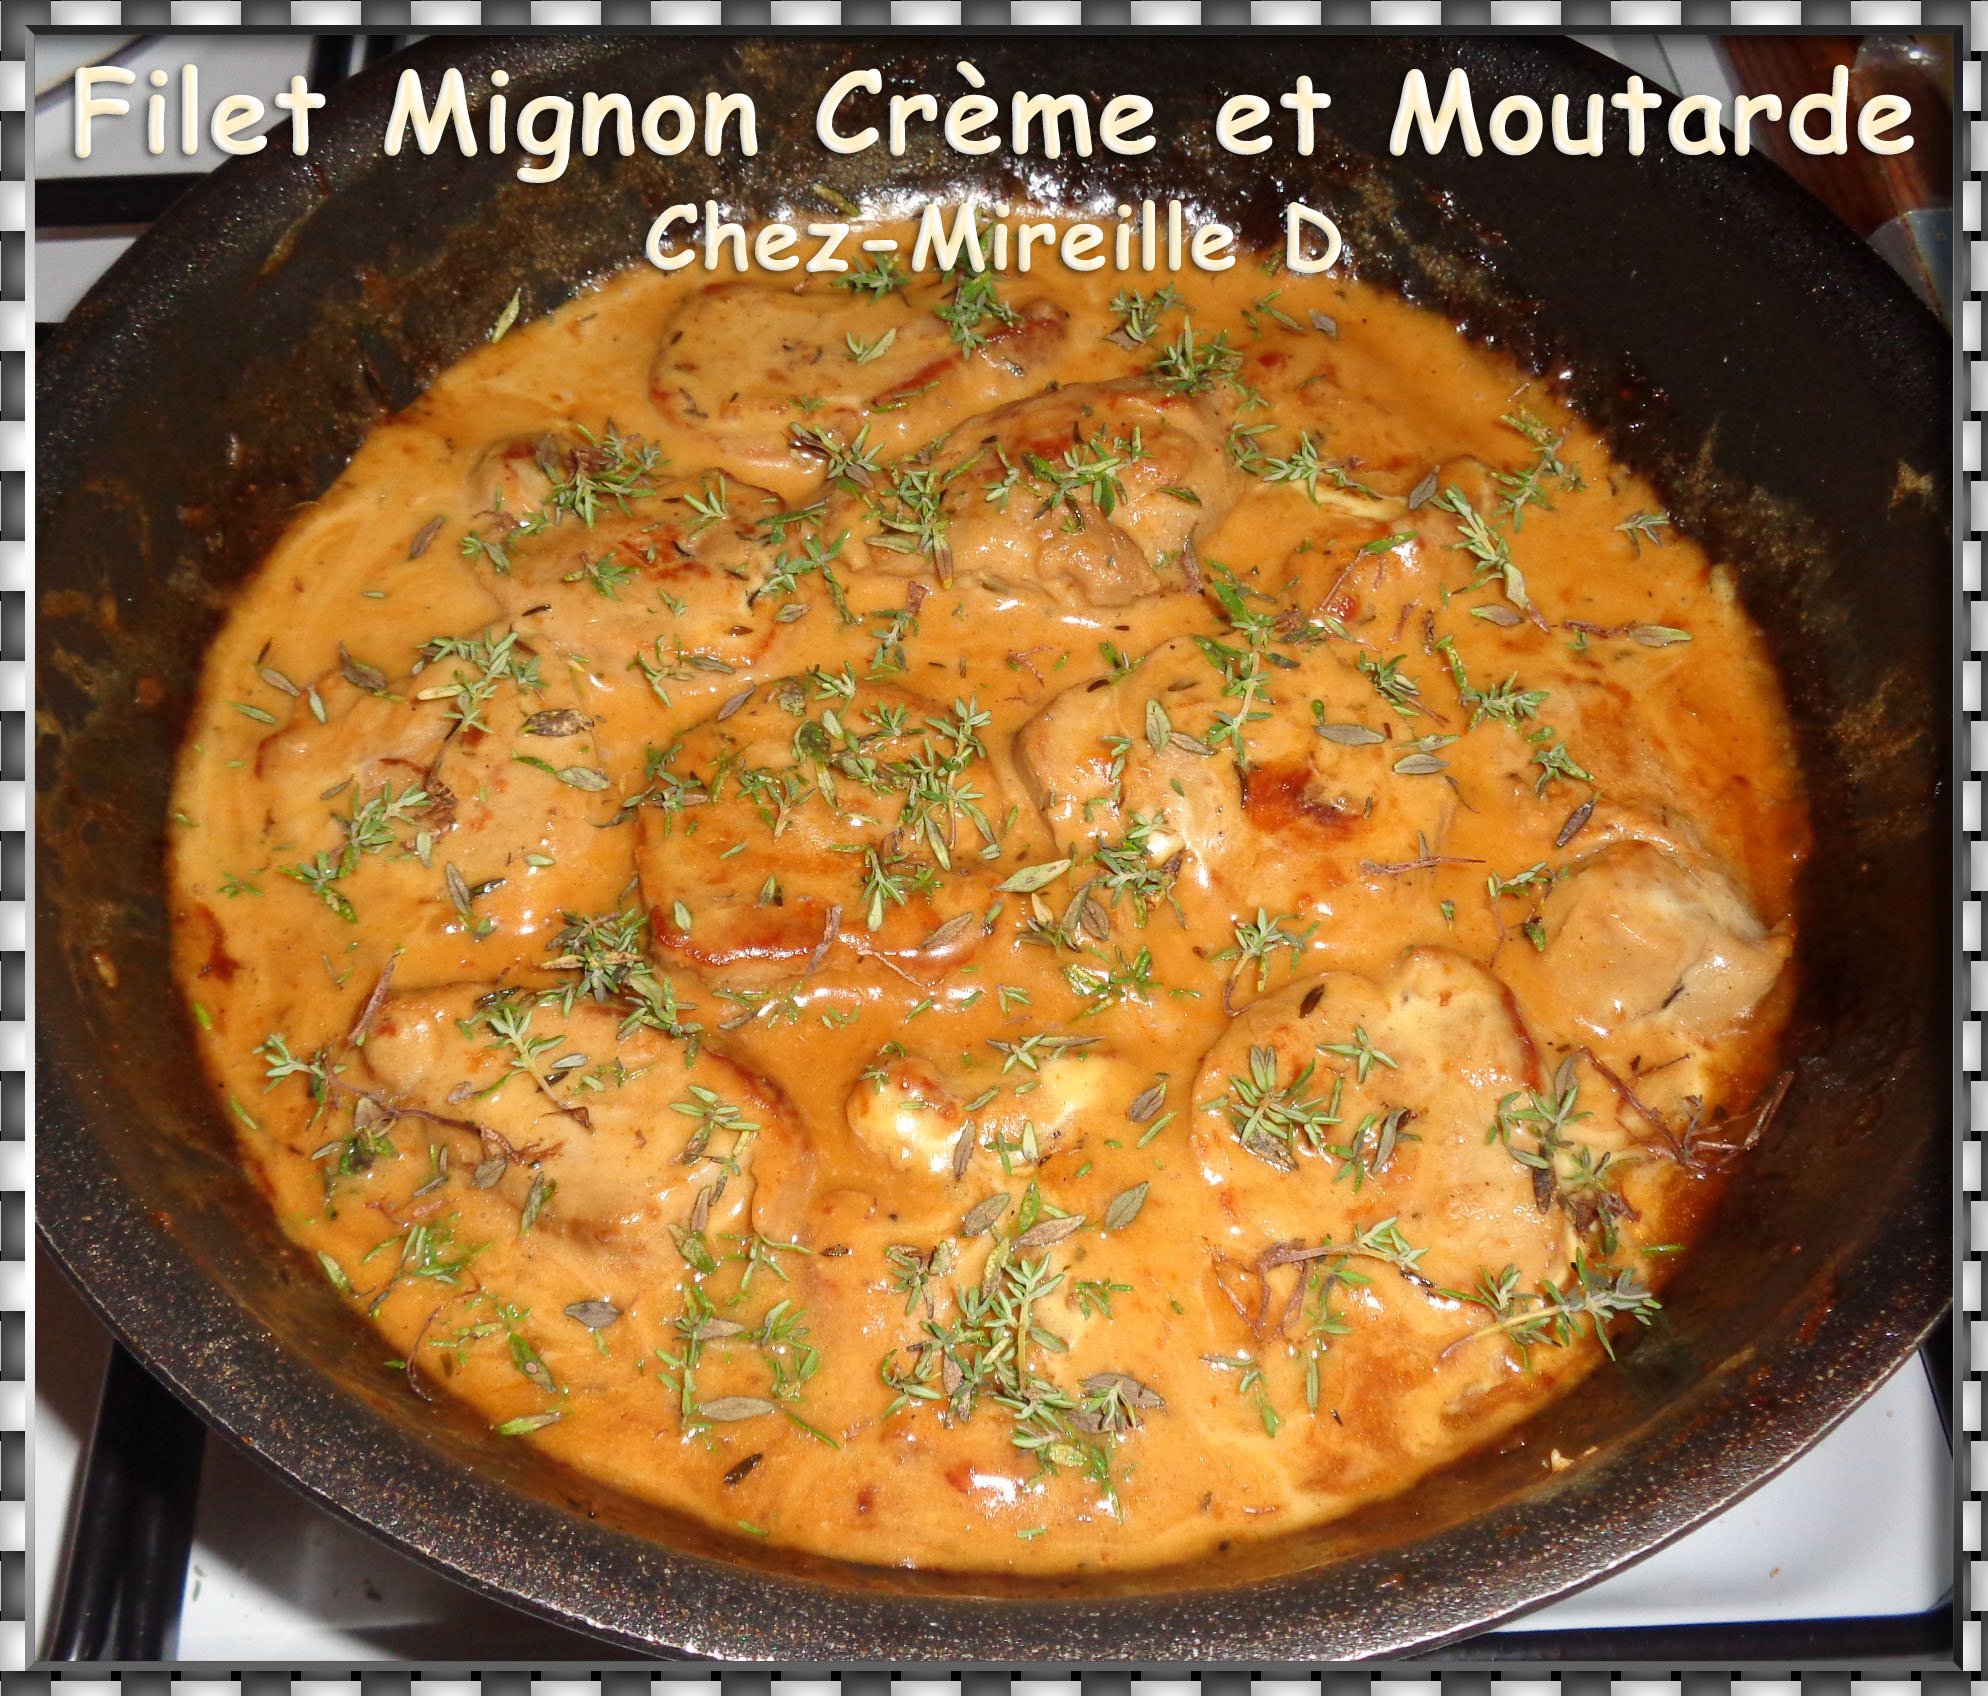 Filet Mignon de Porc Crème et Moutarde - Chez-Mireille D